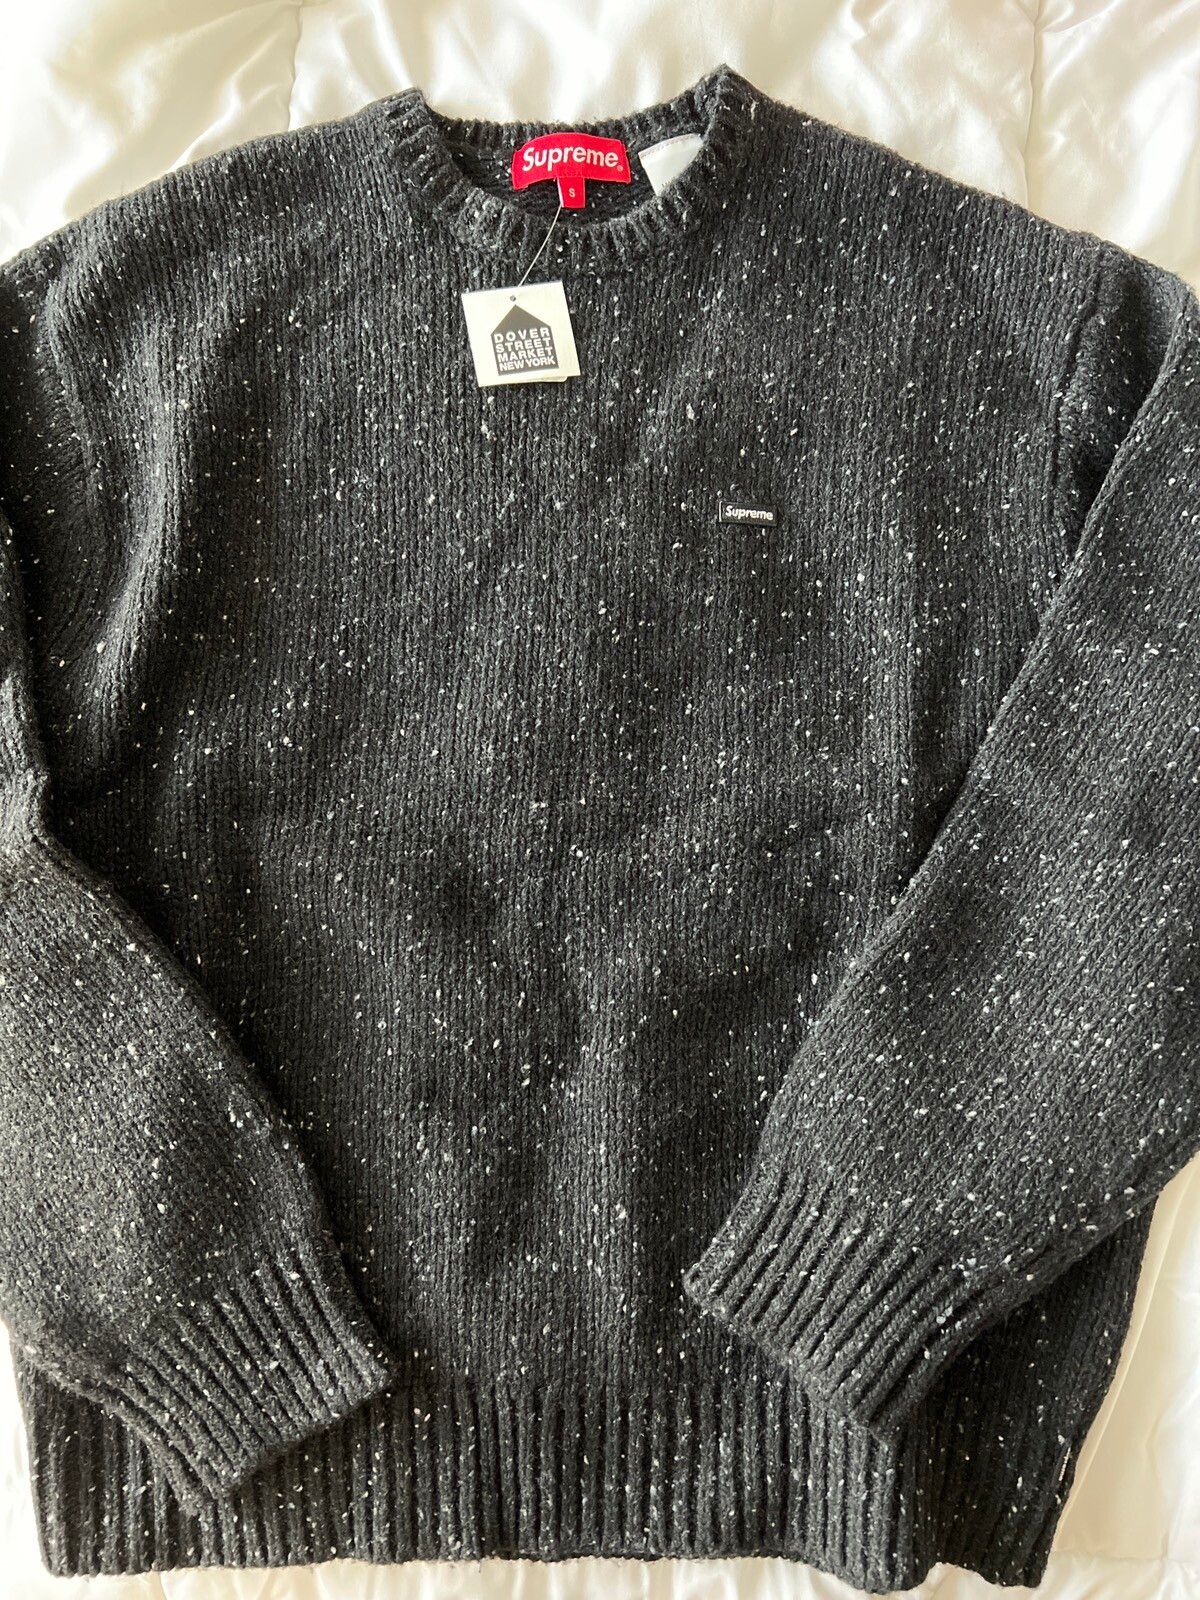 Supreme Supreme F/W 22 Speckled Sweater Small BOGO Logo sz S Small 